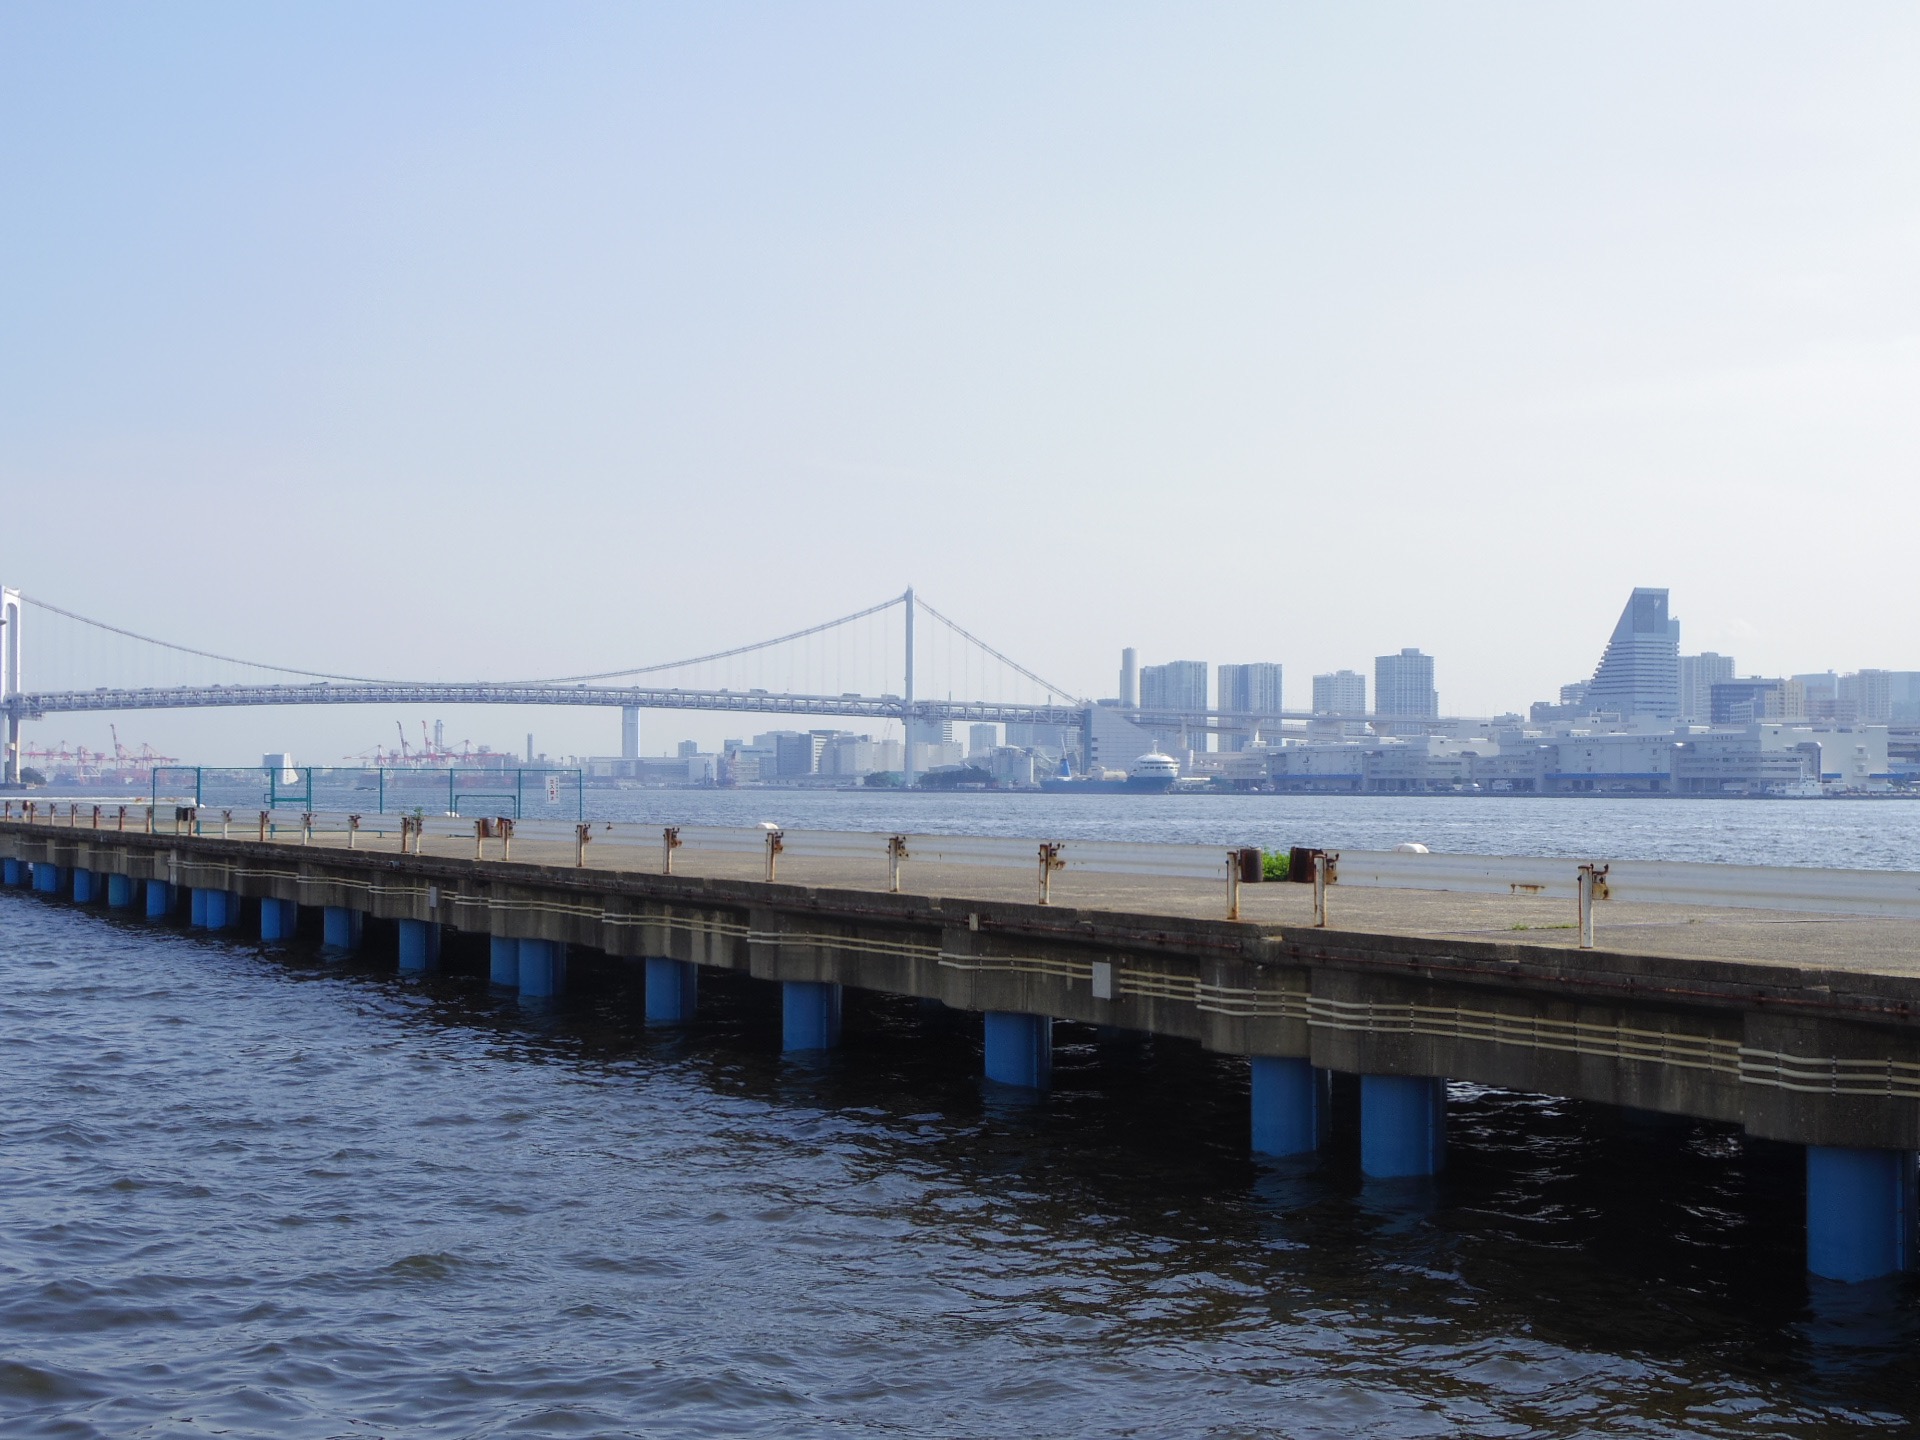 東京湾とレインボーブリッジ